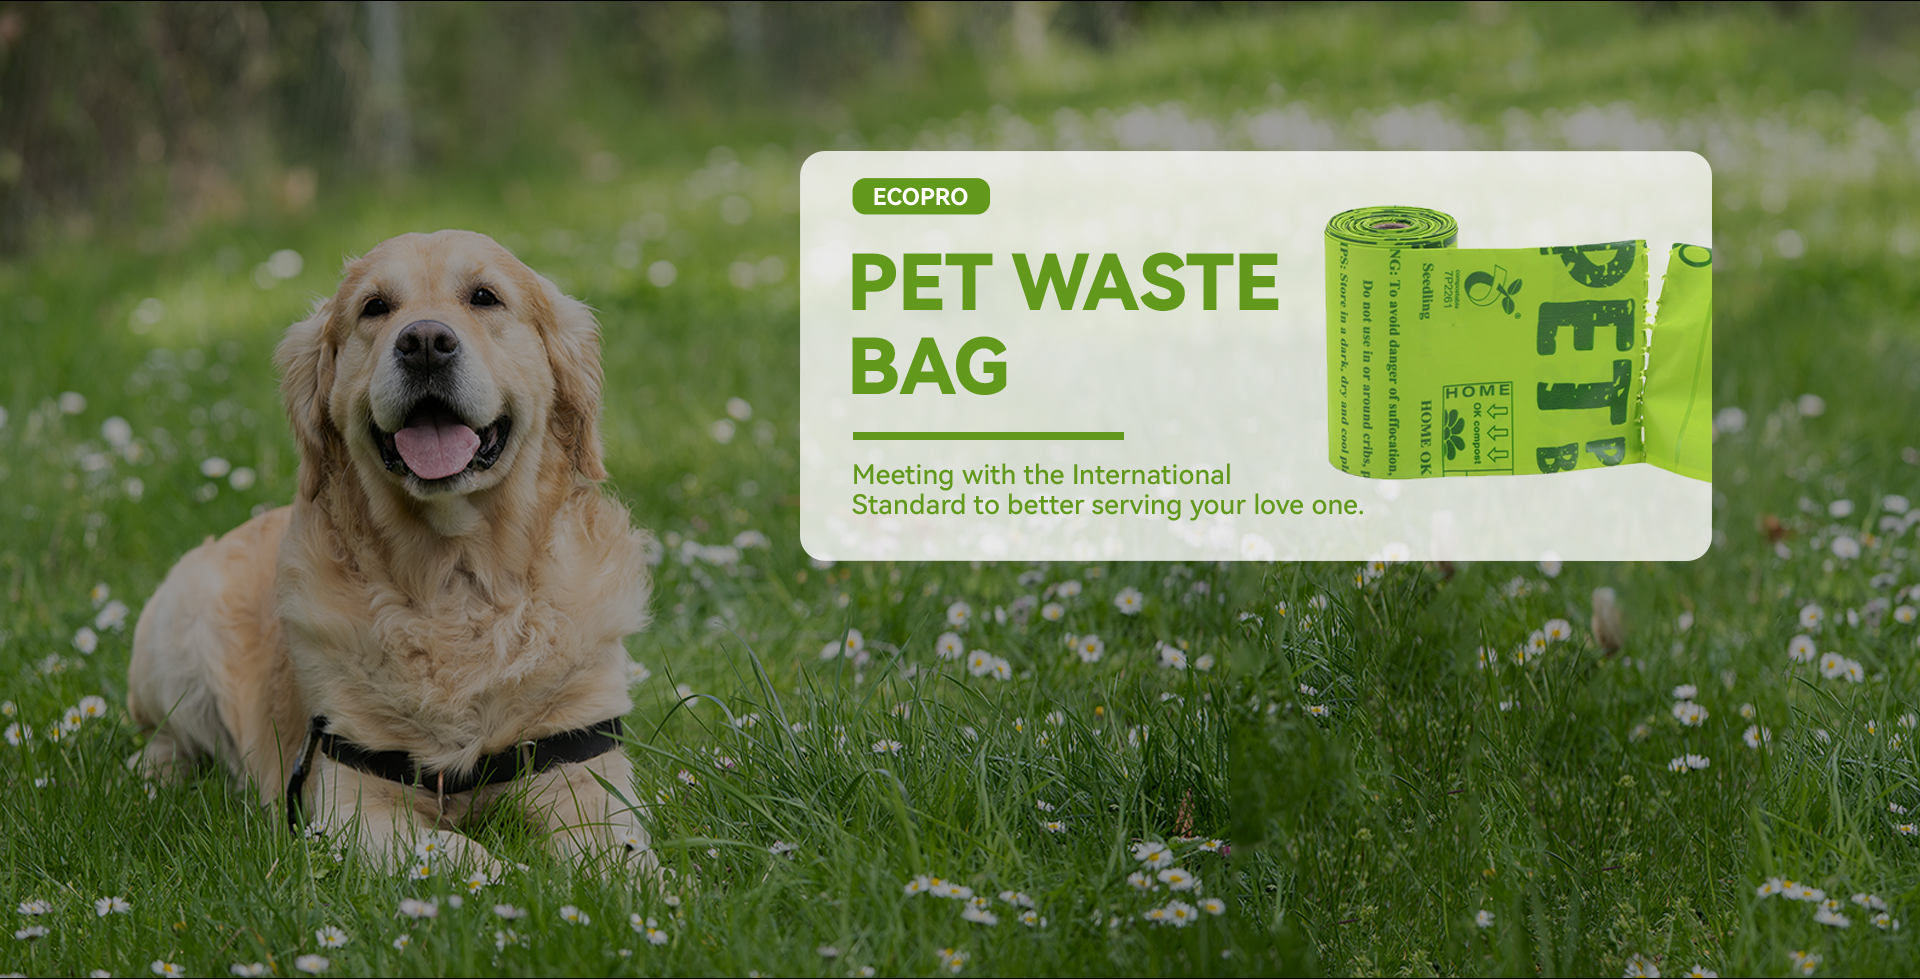 Bolsa biodegradable compostable para excrementos de residuos de perros y mascotas Ecopro